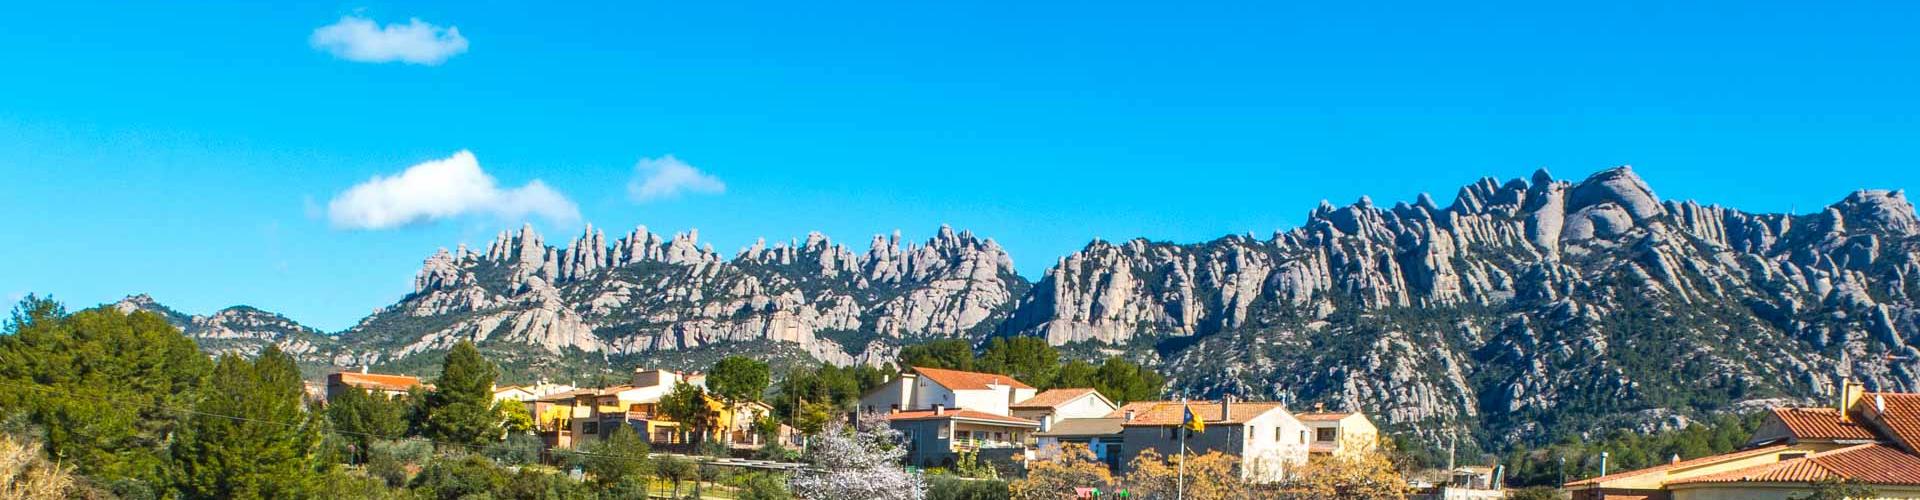 Vistes a Montserrat des del Bruc